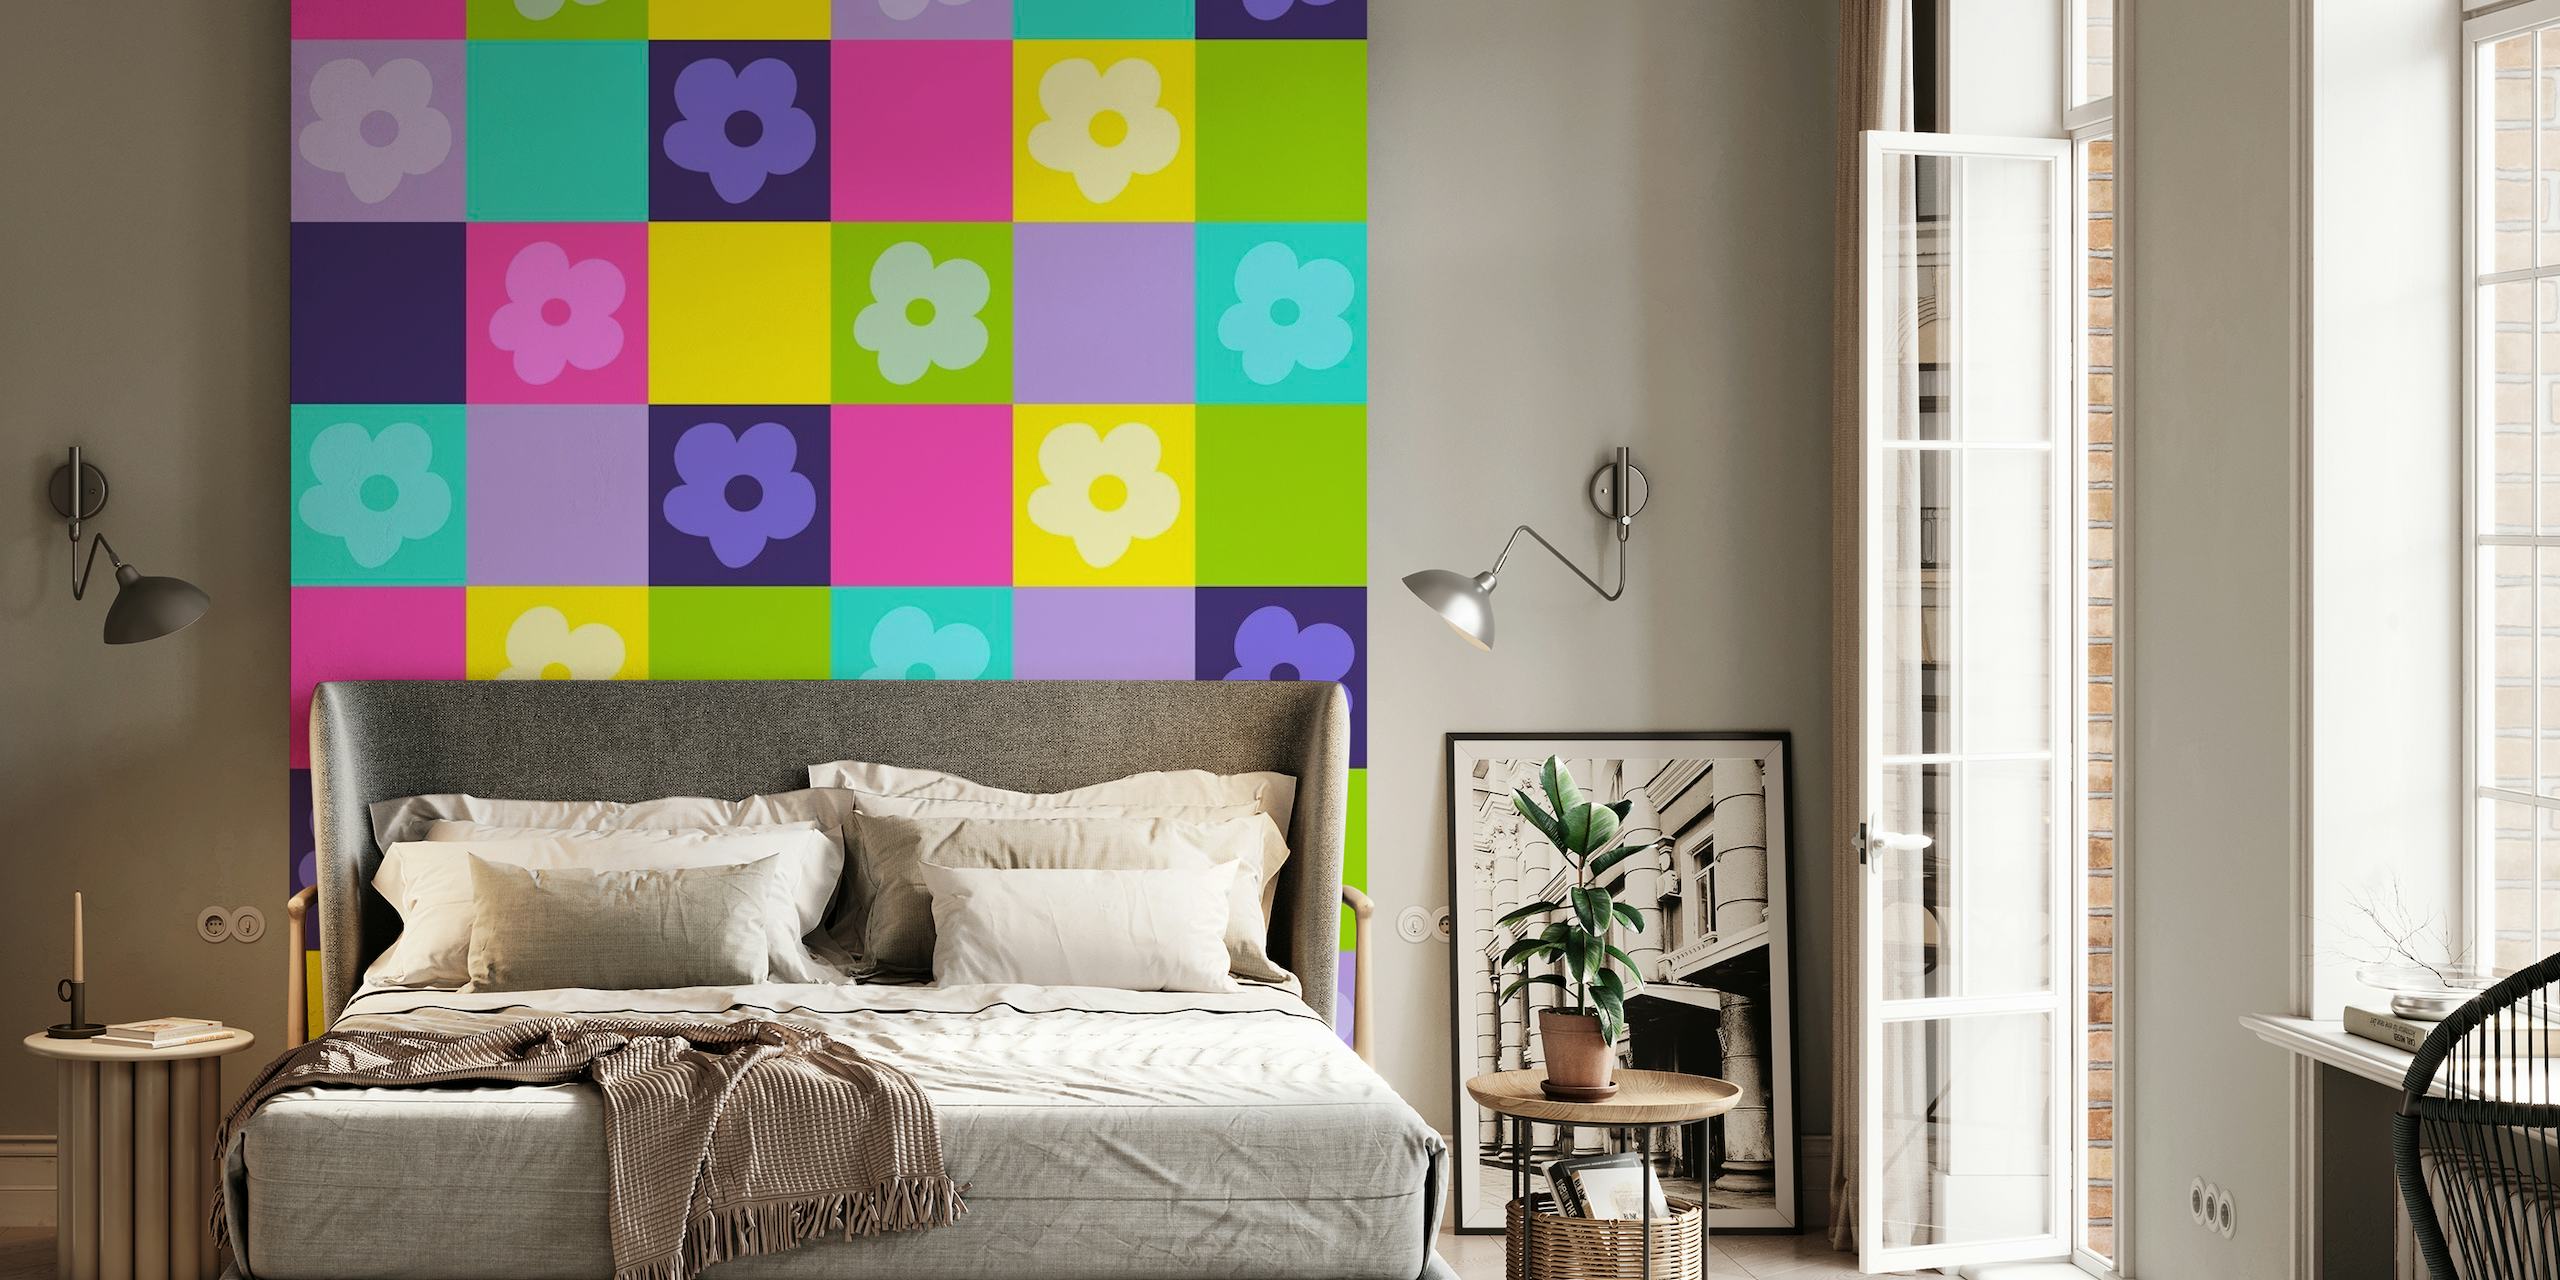 Farbenfrohe, von den 80ern inspirierte neonkarierte Wandtapete mit einfachen Blumenmustern